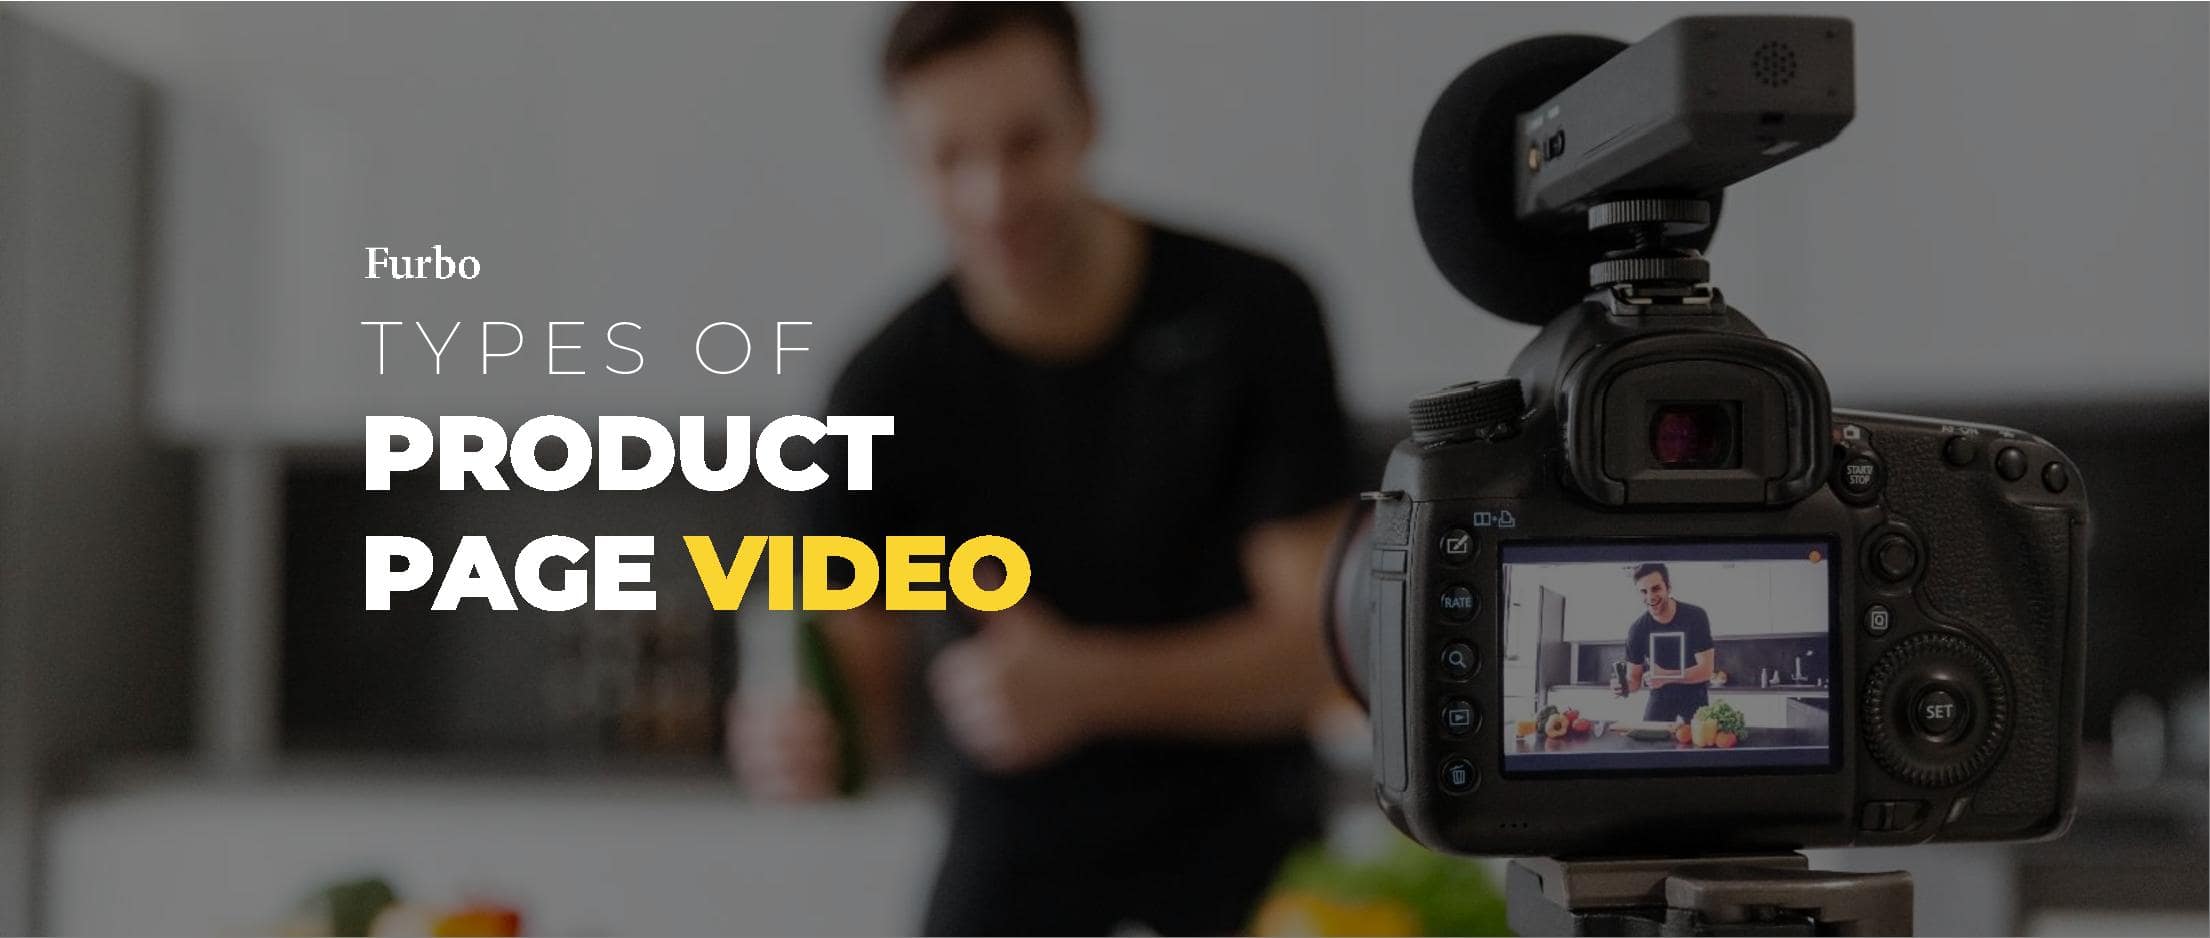 ۷ مدل ویدیو برای افزایش فروش در صفحه محصول